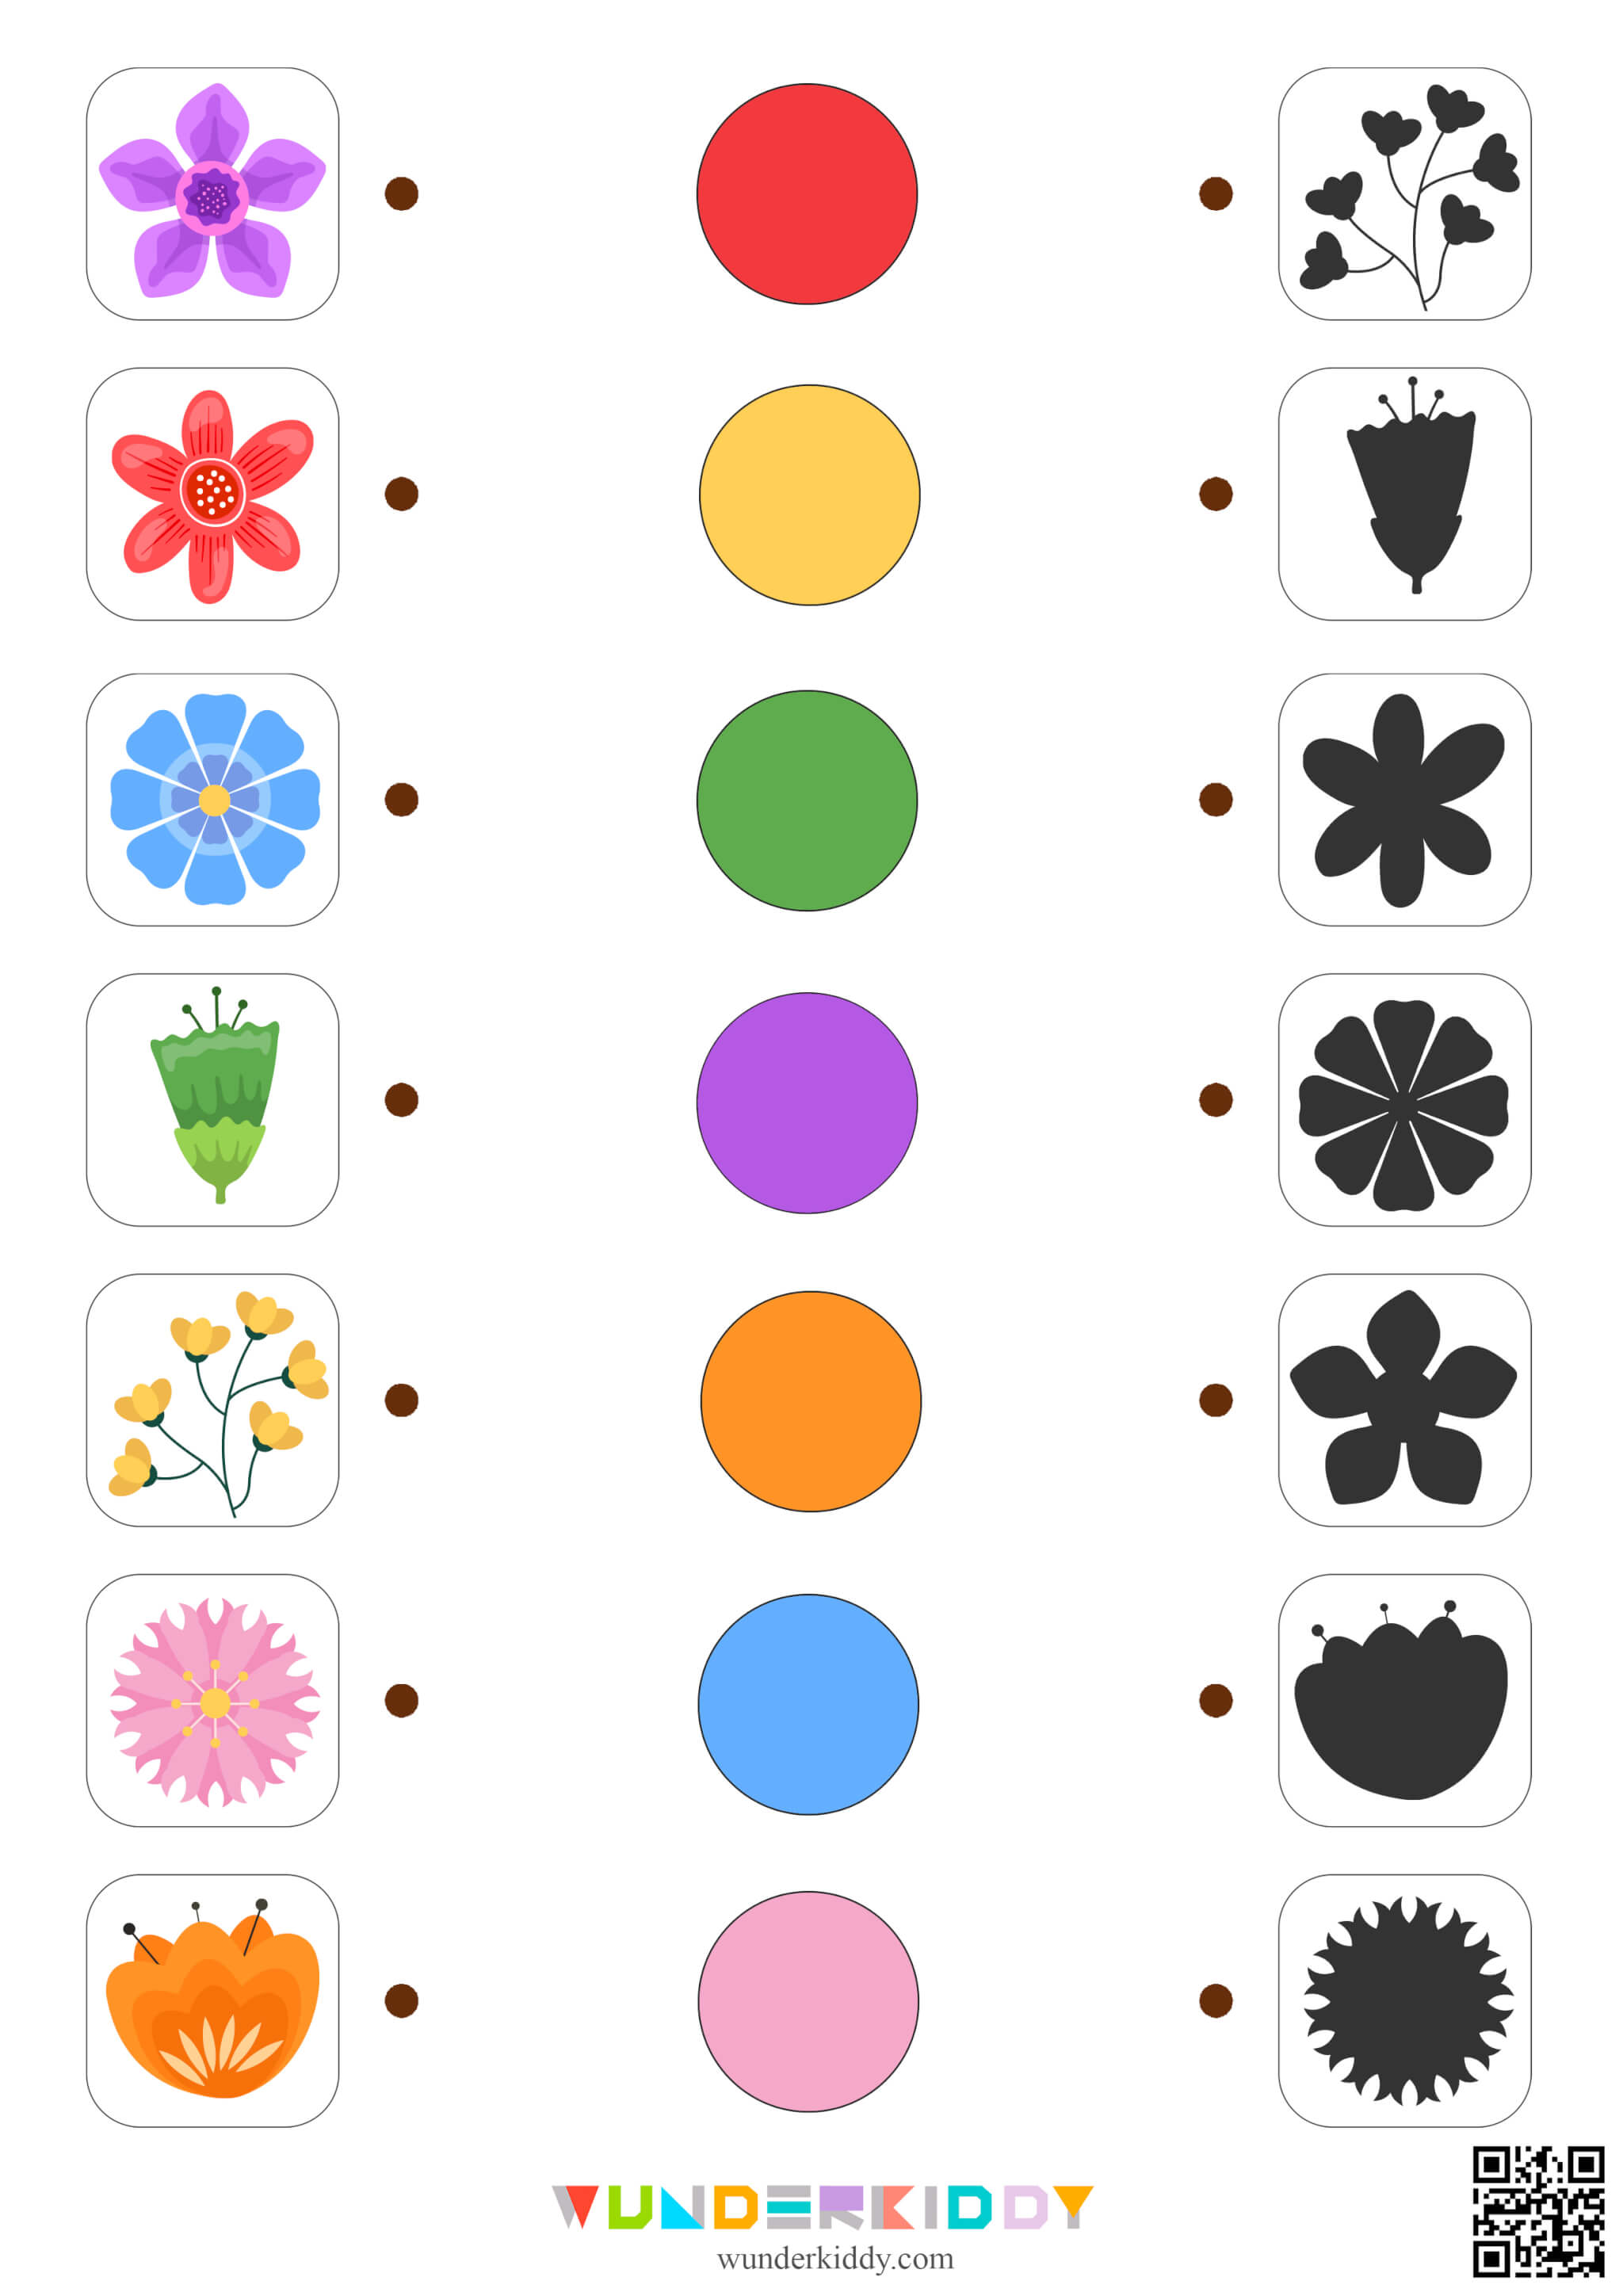 Flowers Matching Worksheet - Image 4